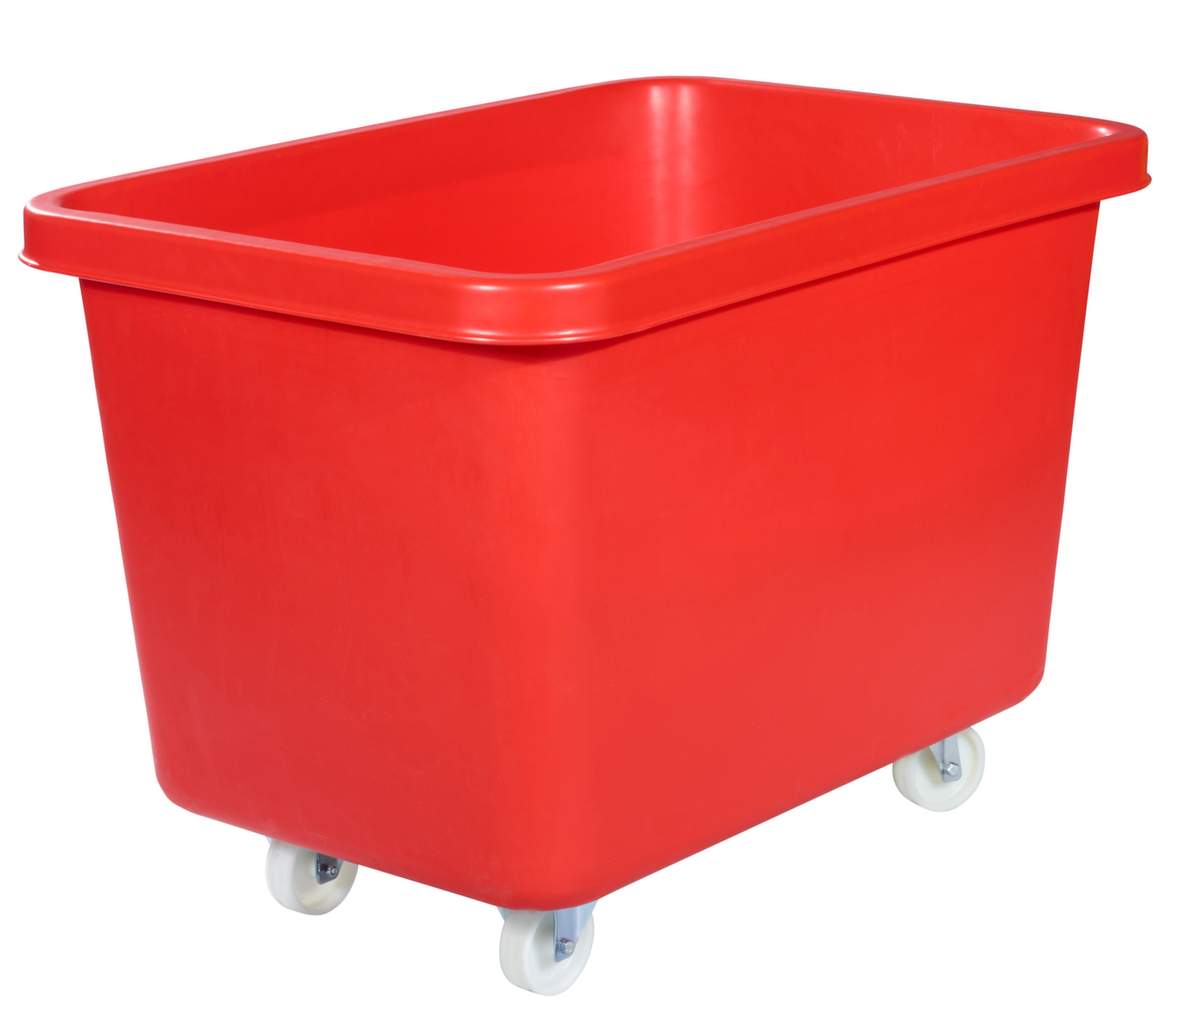 Mobiele rechthoekige container voedselveilig + versterkte basis, inhoud 227 l, rood  ZOOM